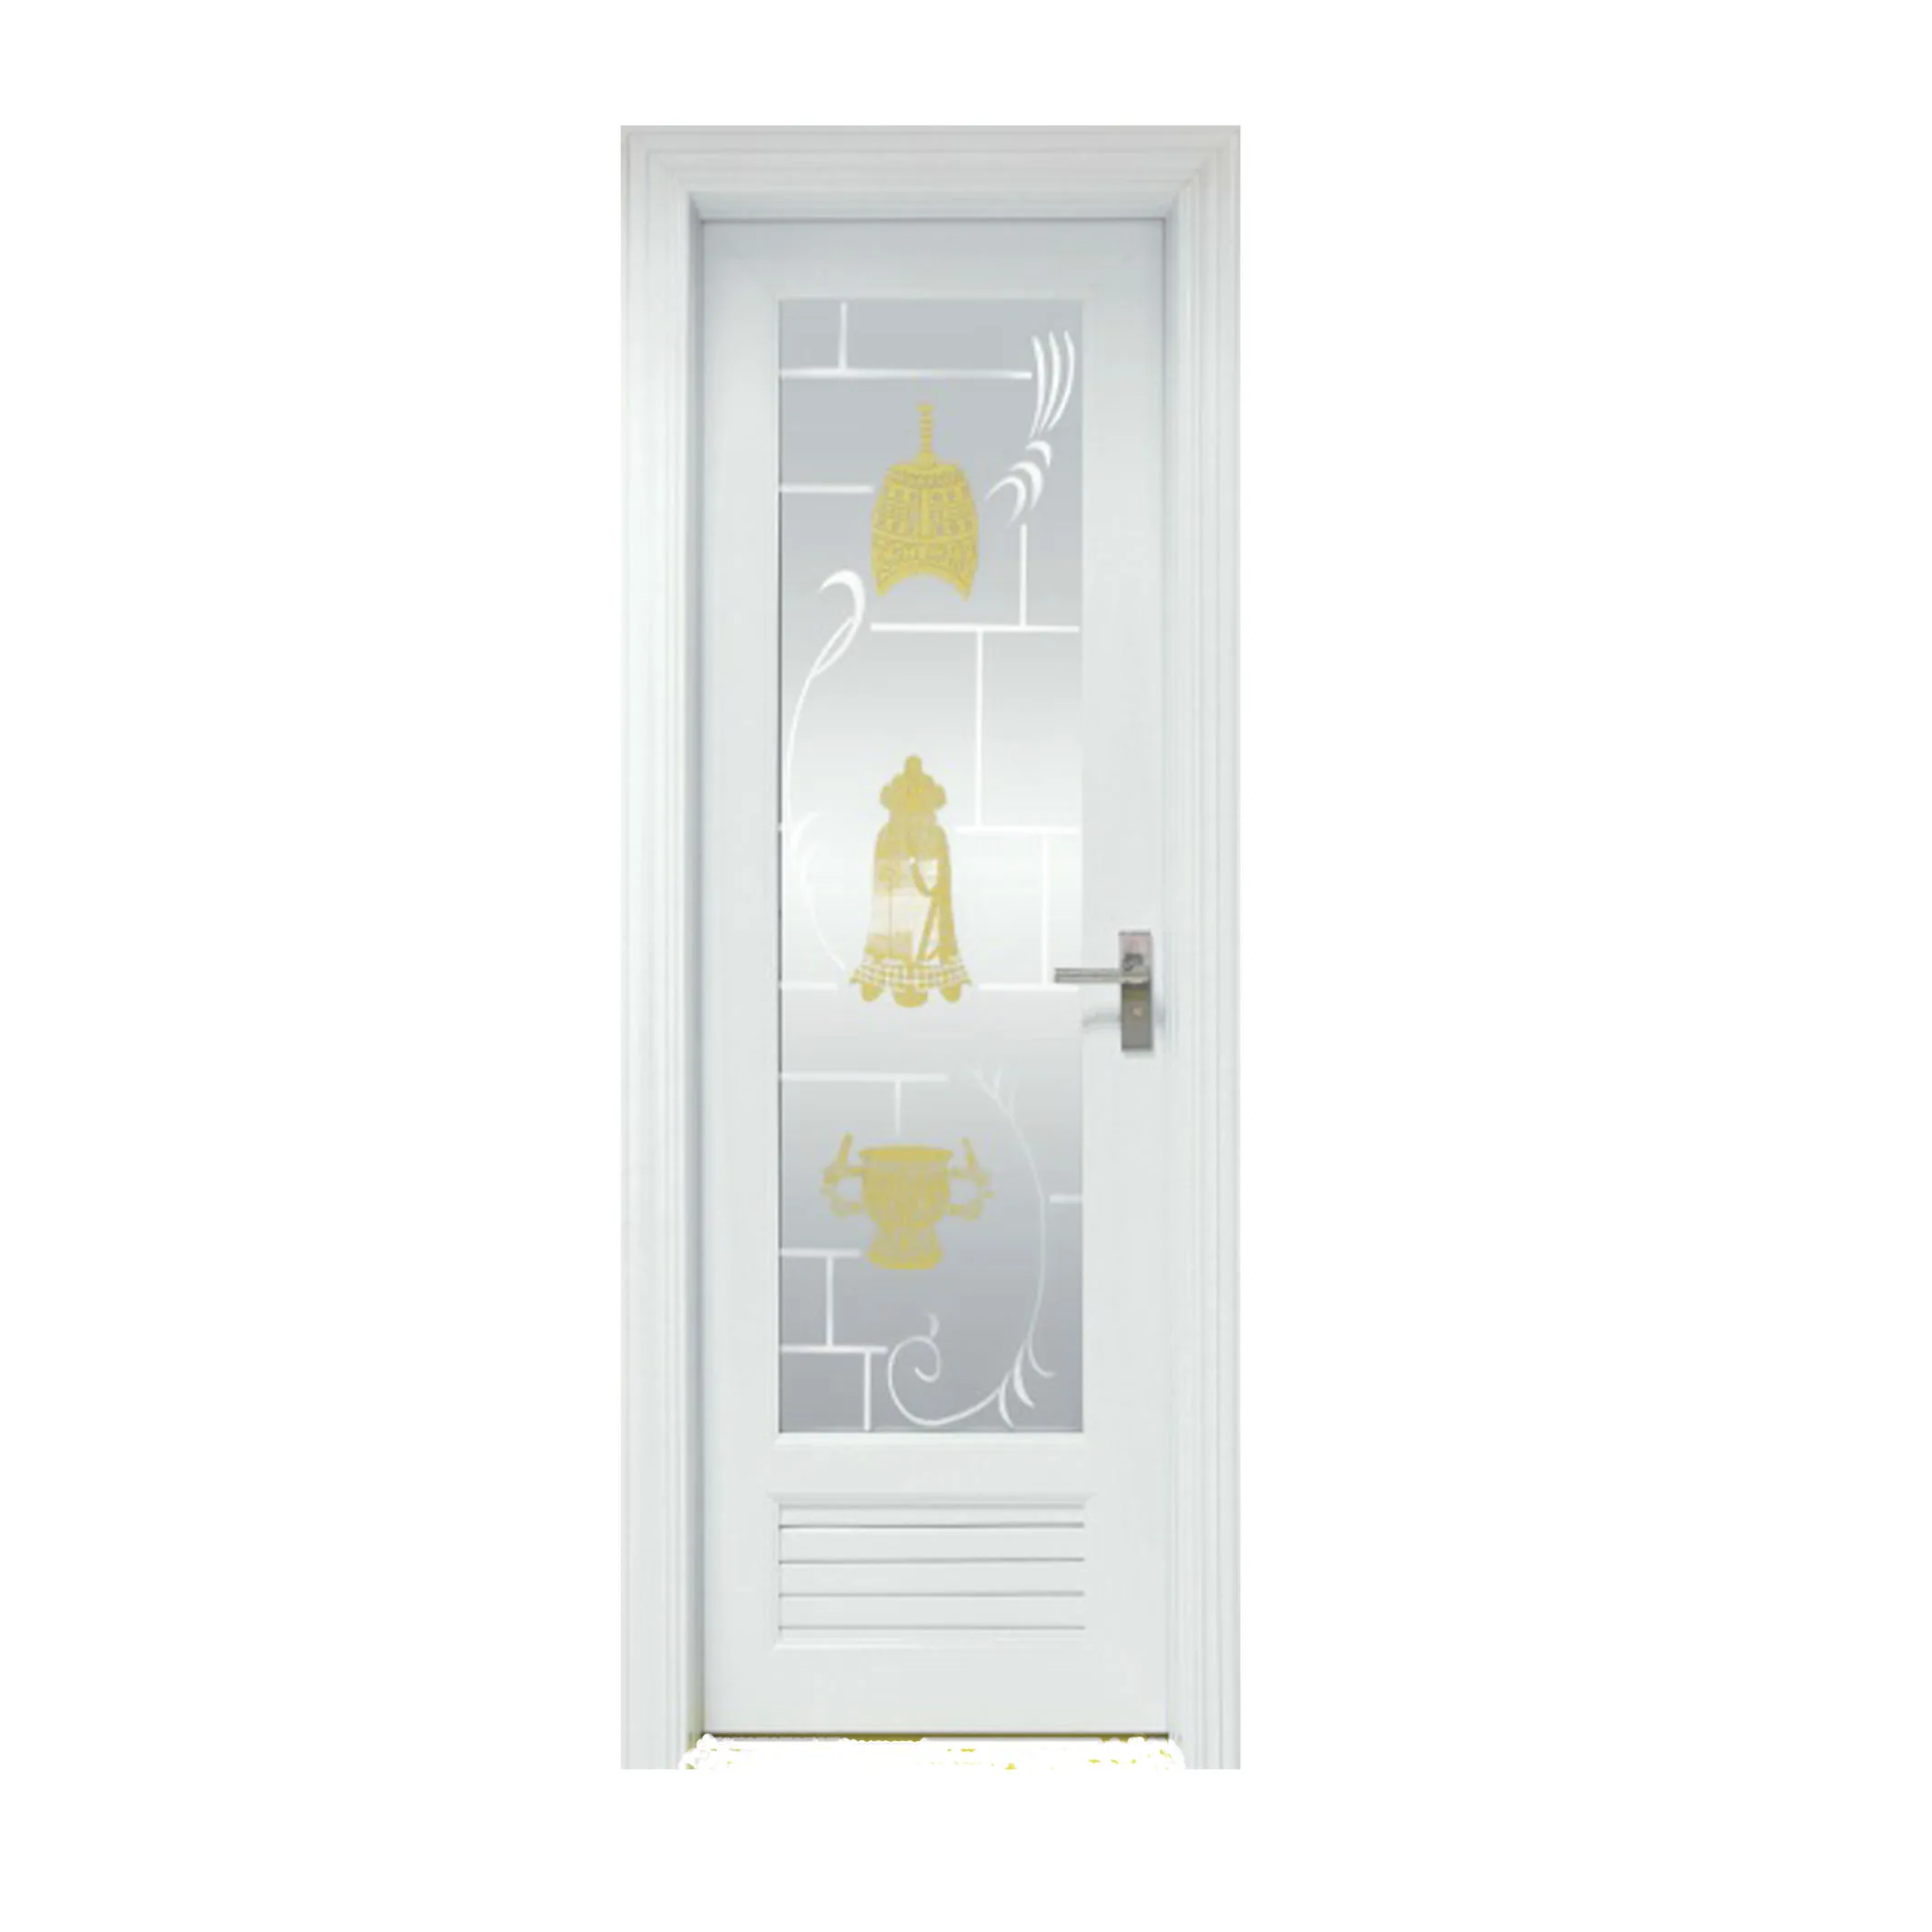 Hot Sale Casement Home Panel Wood Outdoor Blinds New Design Pvc Door